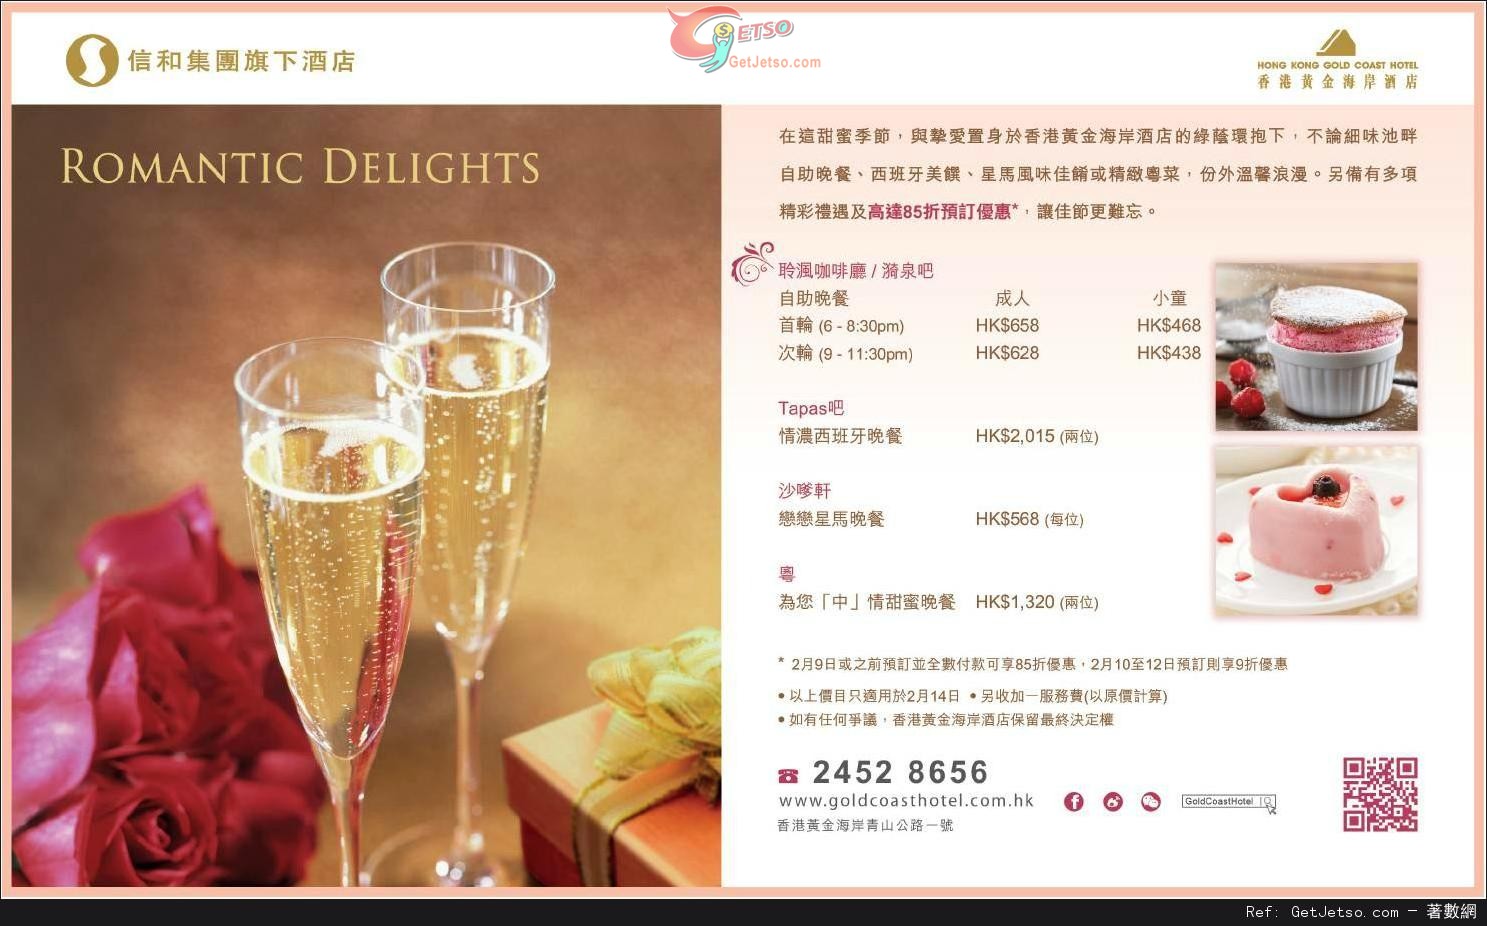 香港黃金海岸酒店情人節餐飲預訂優惠(至15年2月12日)圖片1